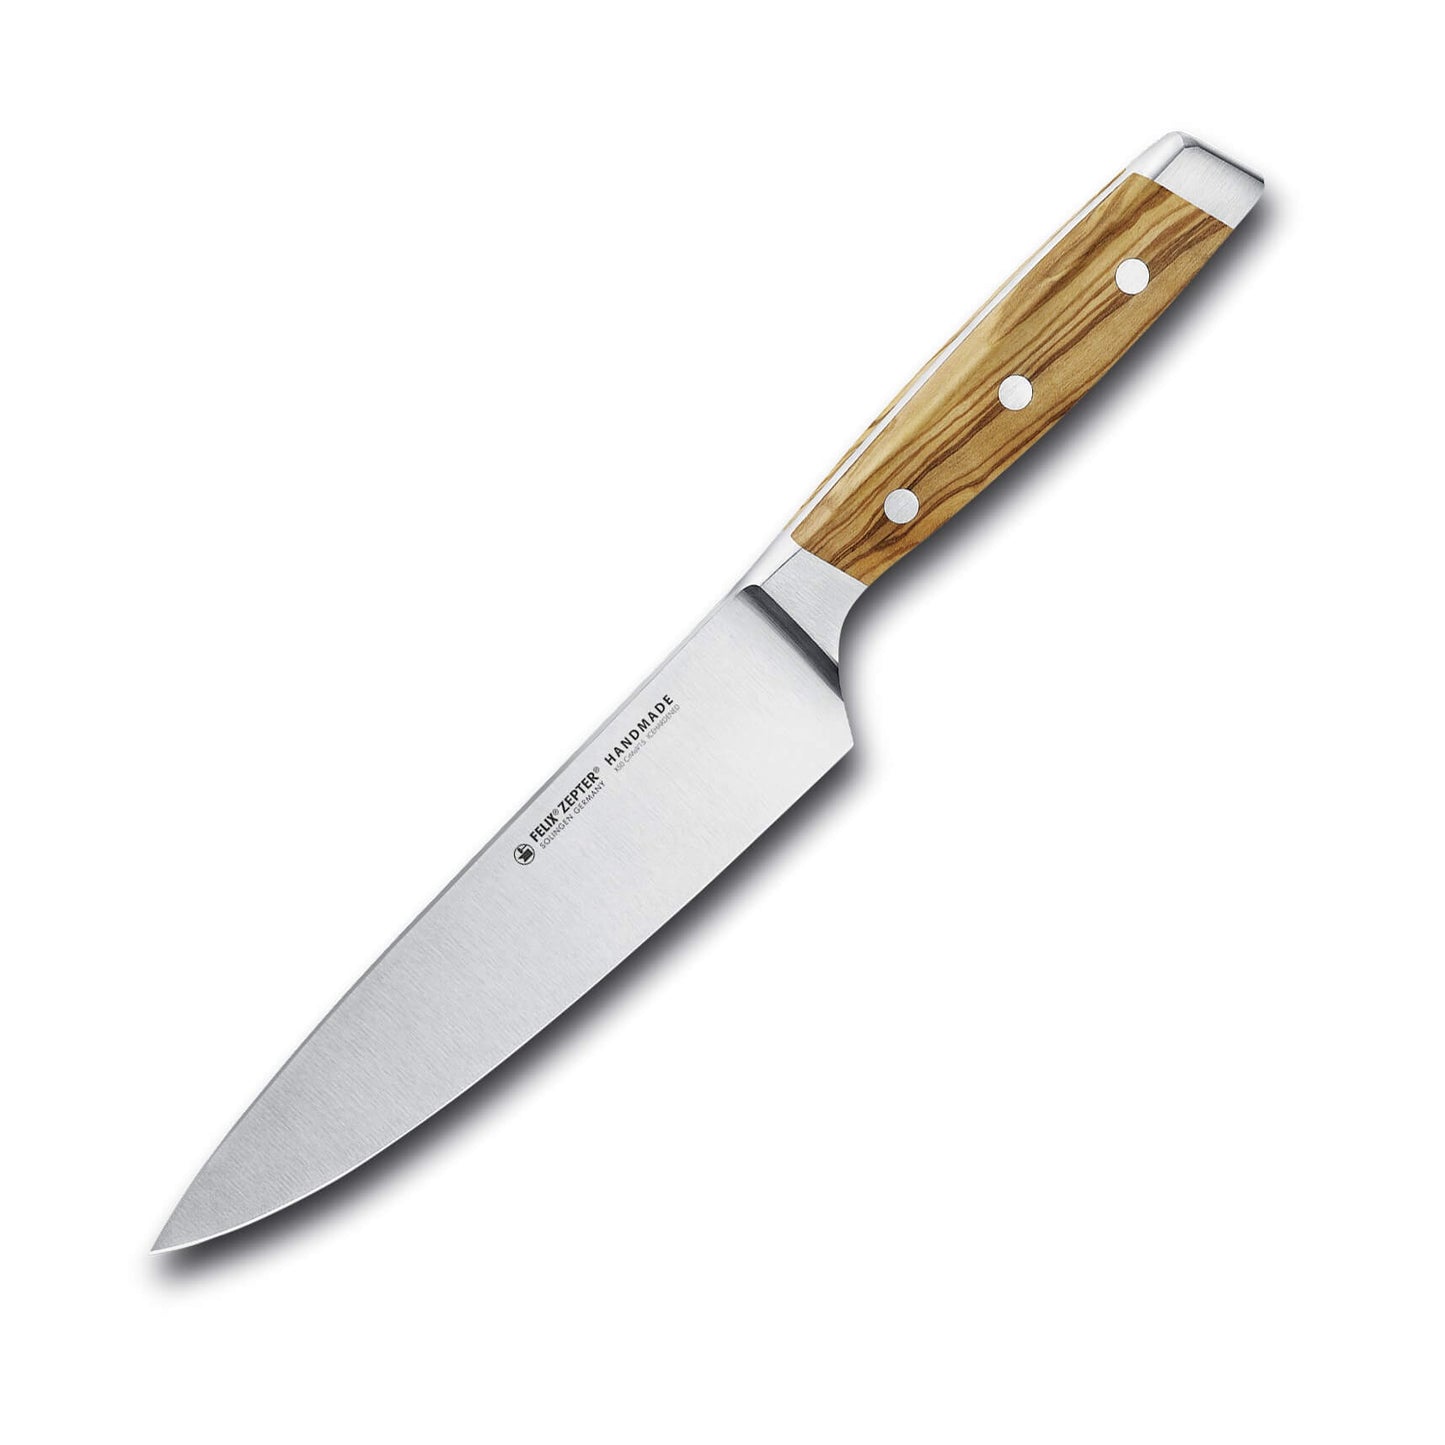 FELIX First Class Chef Knife 18cm